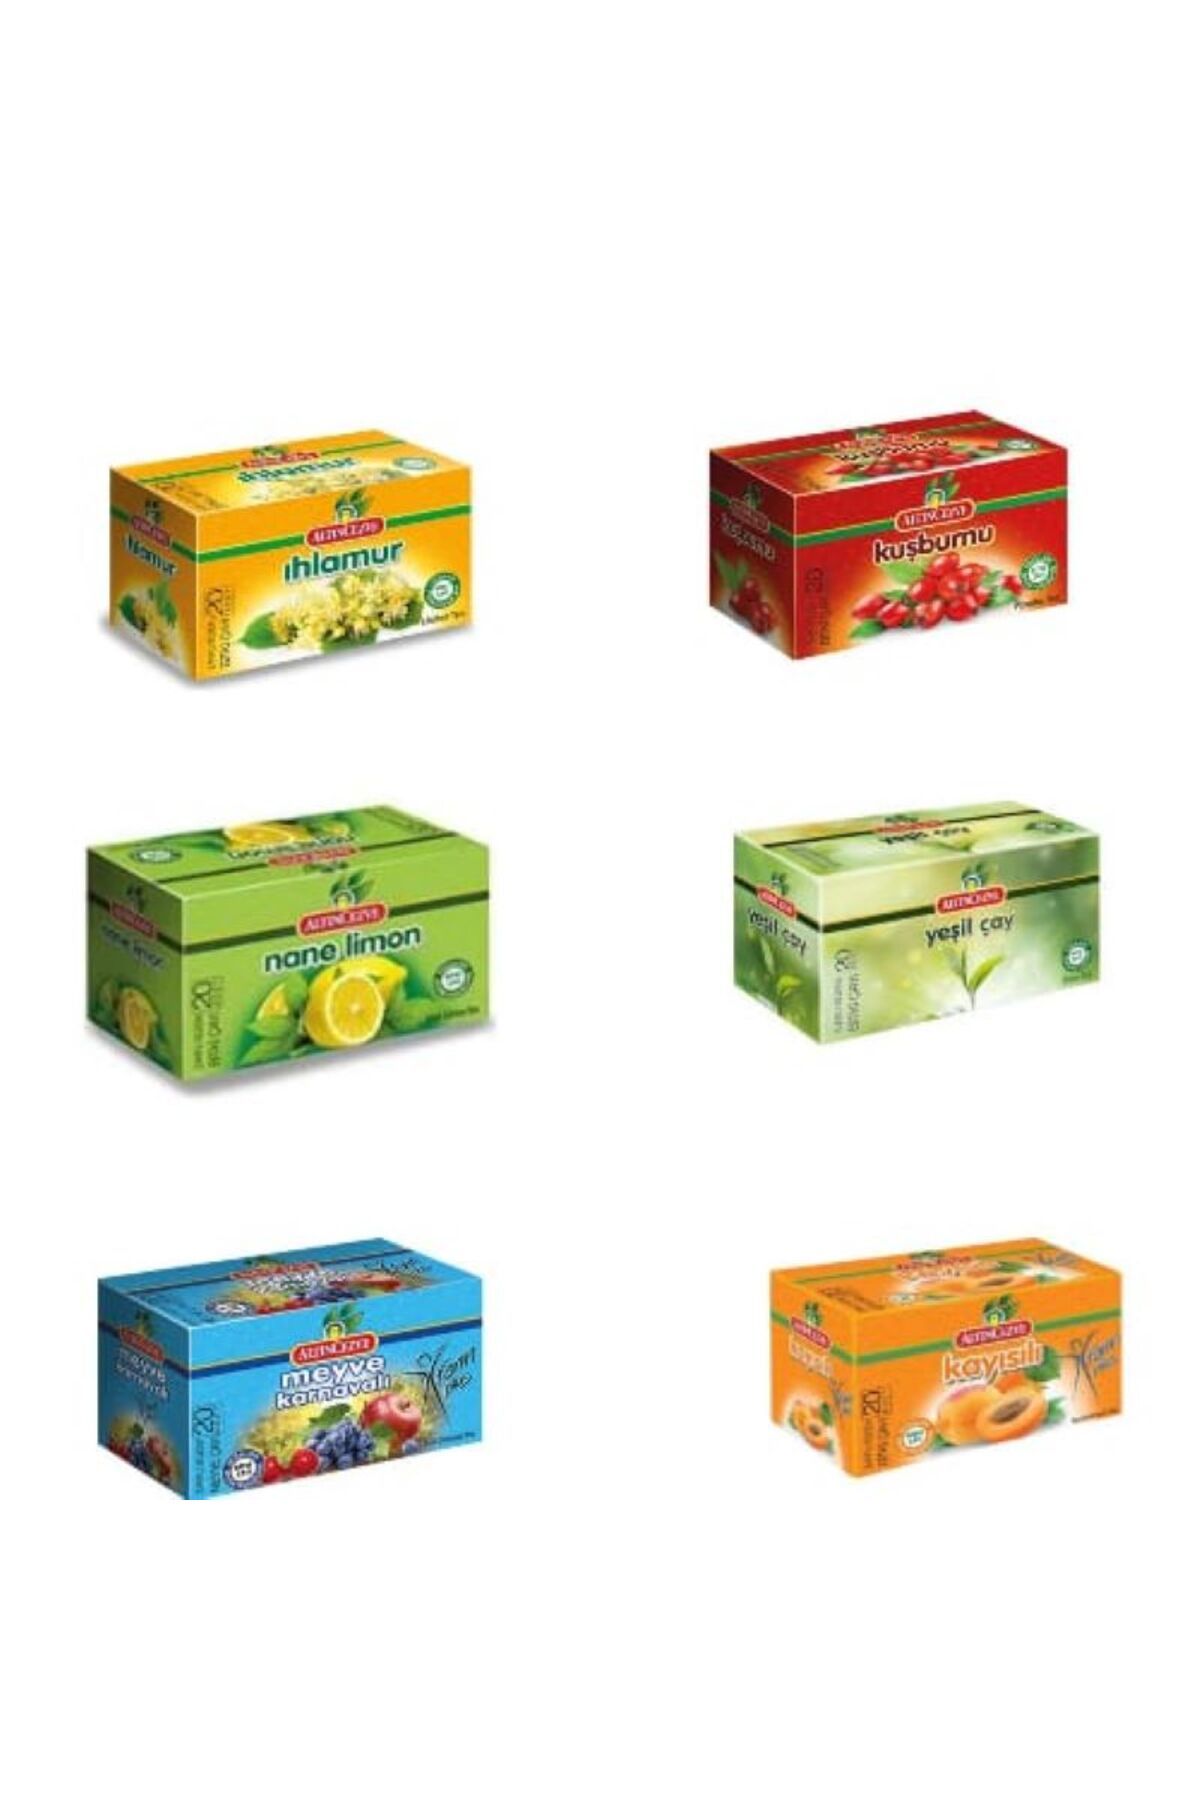 Altıncezve Sallama Çay 6' Lı Paket (ıhlamur, Kuşburnu, Nane Limon,yeşilçay, Meyve Karnavalı, Kayısıl